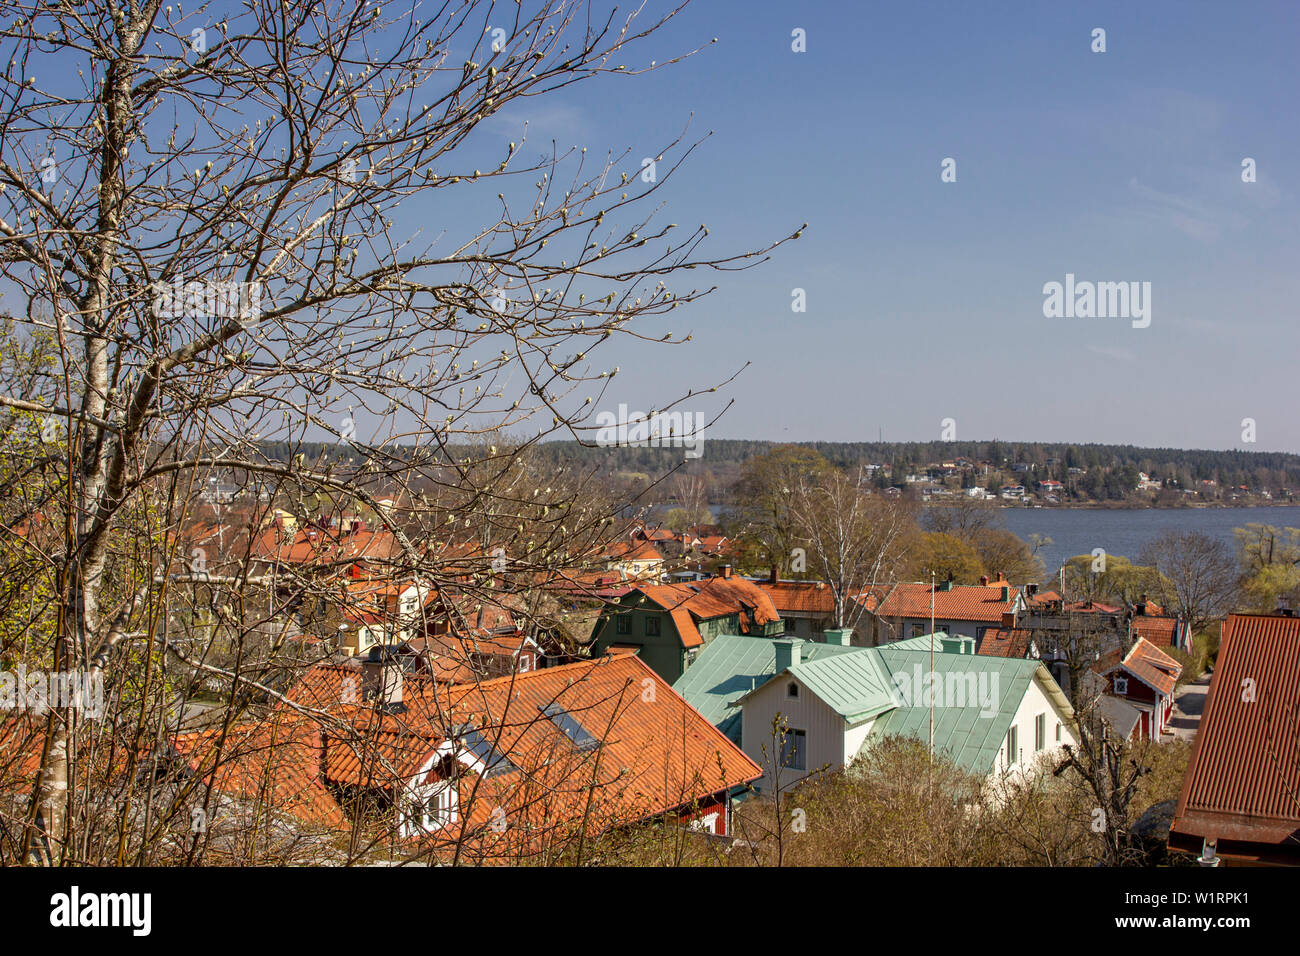 Residencias de teja roja rodean a las orillas del lago Mälaren en el antiguo pueblo de Sigtuna, Suecia en una fría mañana de Abril. Foto de stock